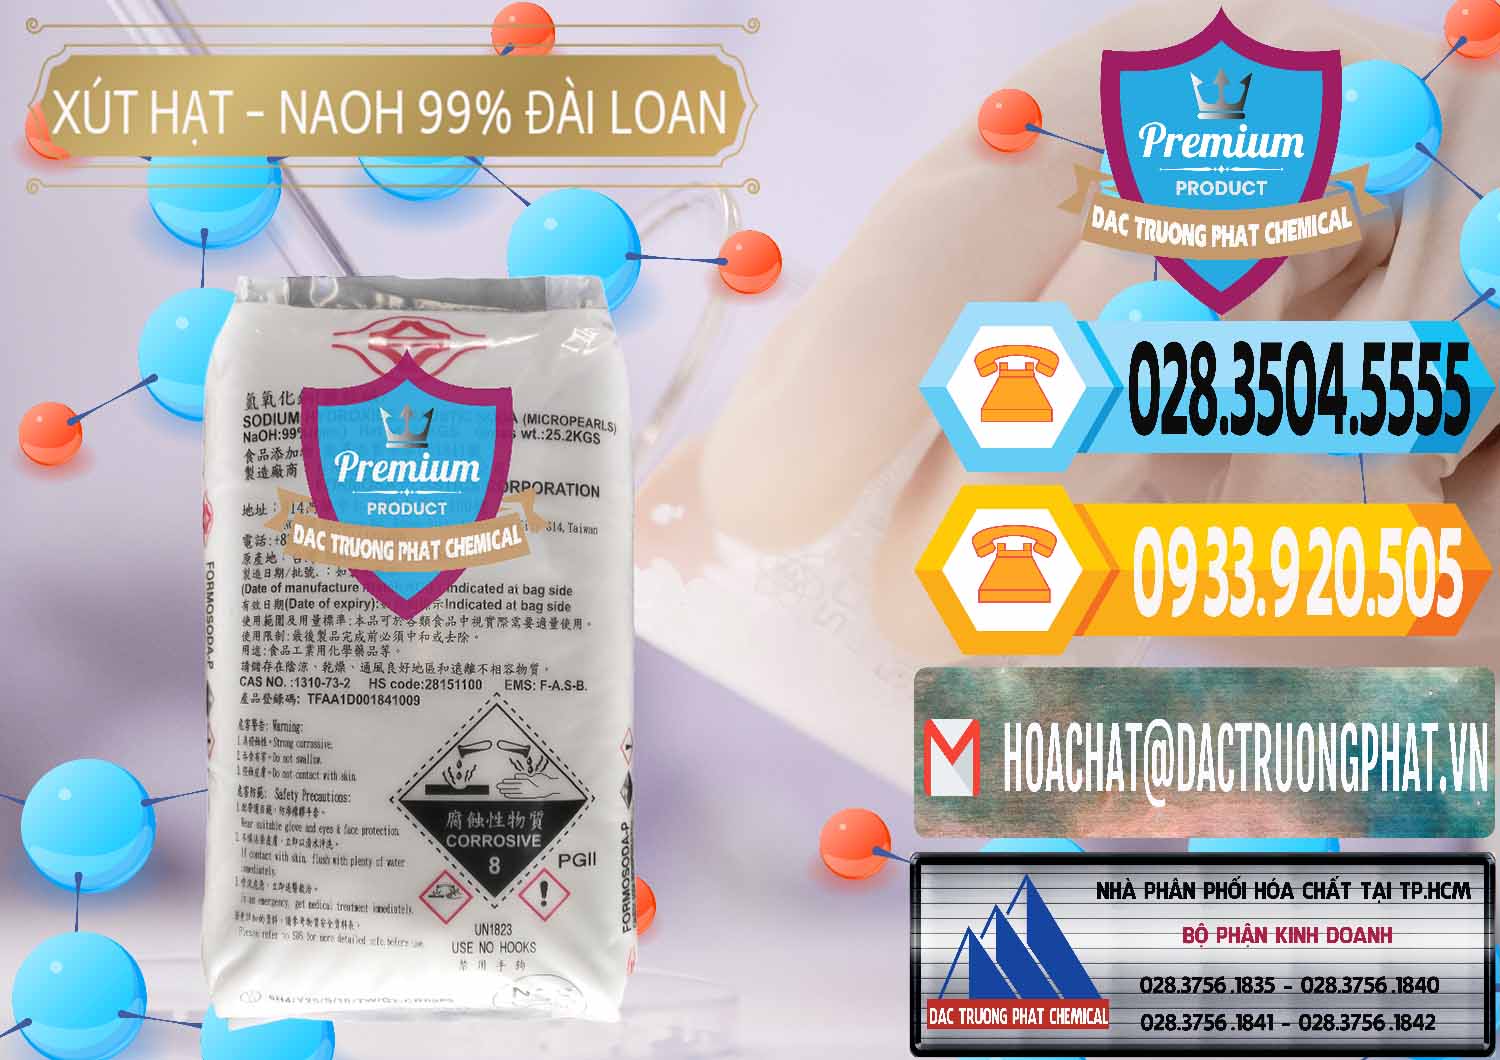 Nơi bán và phân phối Xút Hạt - NaOH Bột 99% Đài Loan Taiwan Formosa - 0167 - Chuyên bán và cung cấp hóa chất tại TP.HCM - hoachattayrua.net